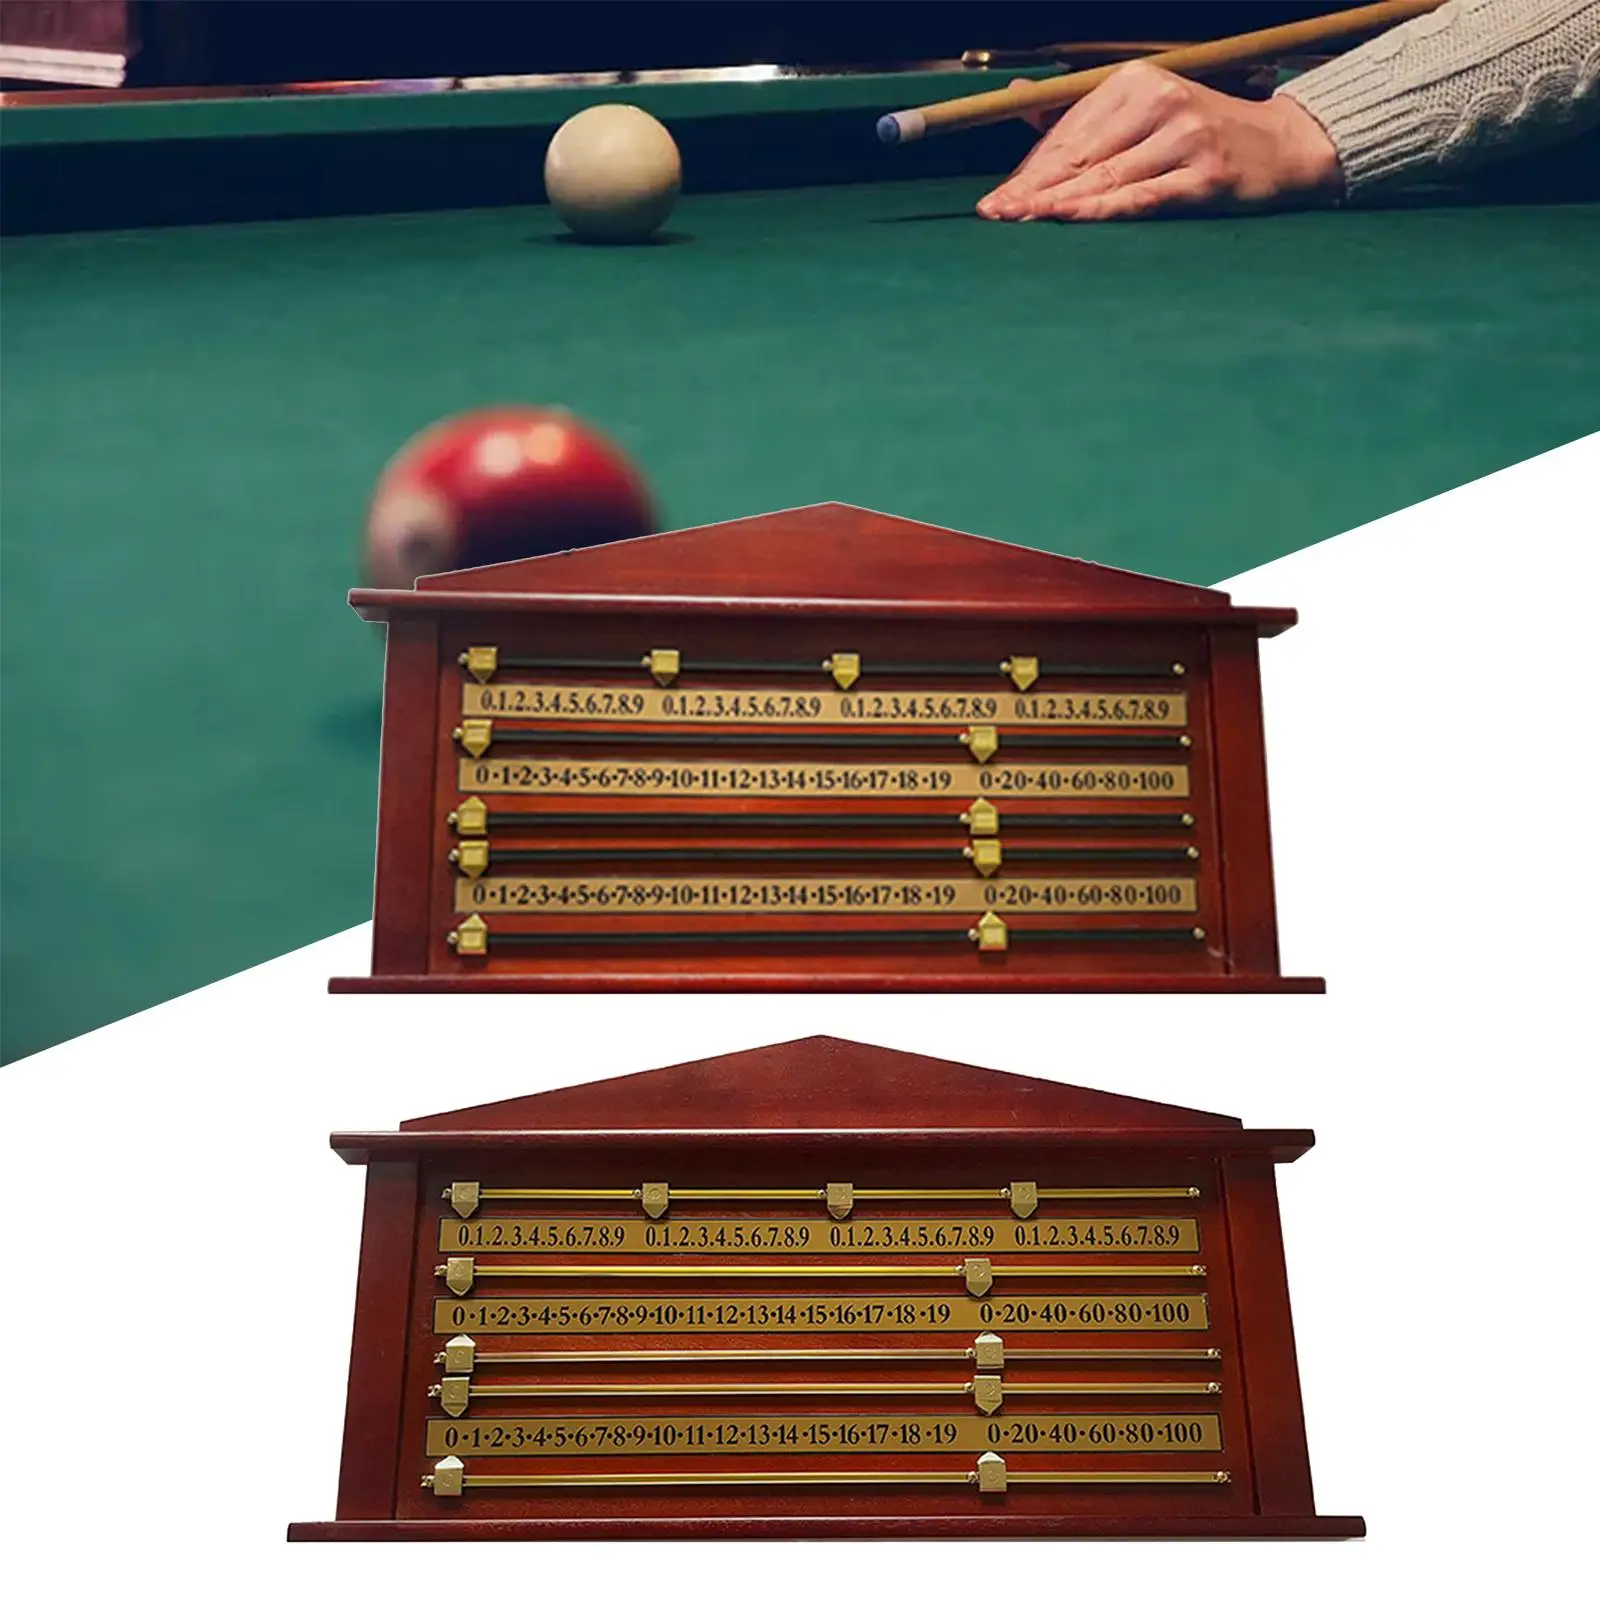 Snooker Billiard Score Board, Shuffleboard Scoreboard Scoring Club Accessories, Snooker Scoreboard Billiard Score Keeper